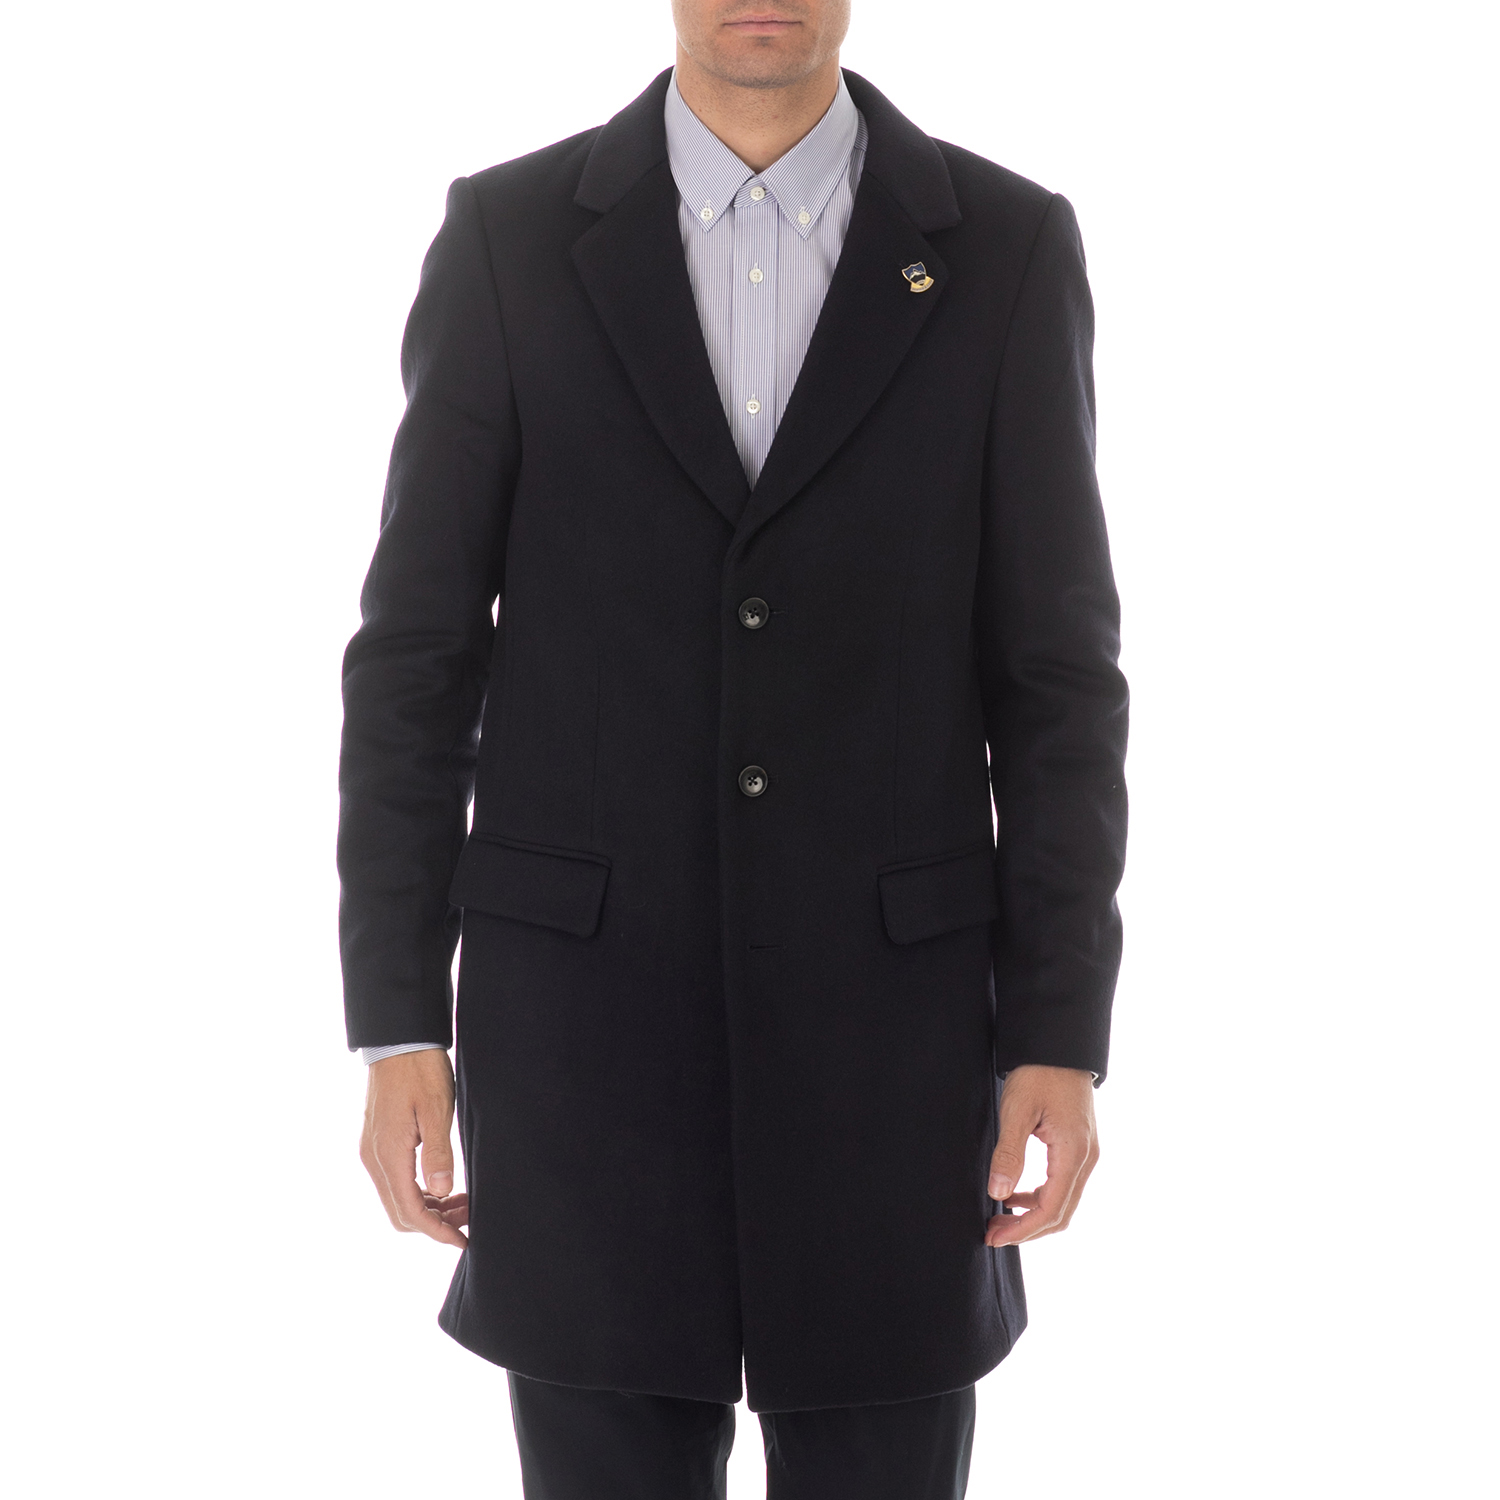 Ανδρικά/Ρούχα/Πανωφόρια/Παλτό SCOTCH & SODA - Ανδρικό παλτό SCOTCH & SODA Classic 3-button σκούρο μπλέ